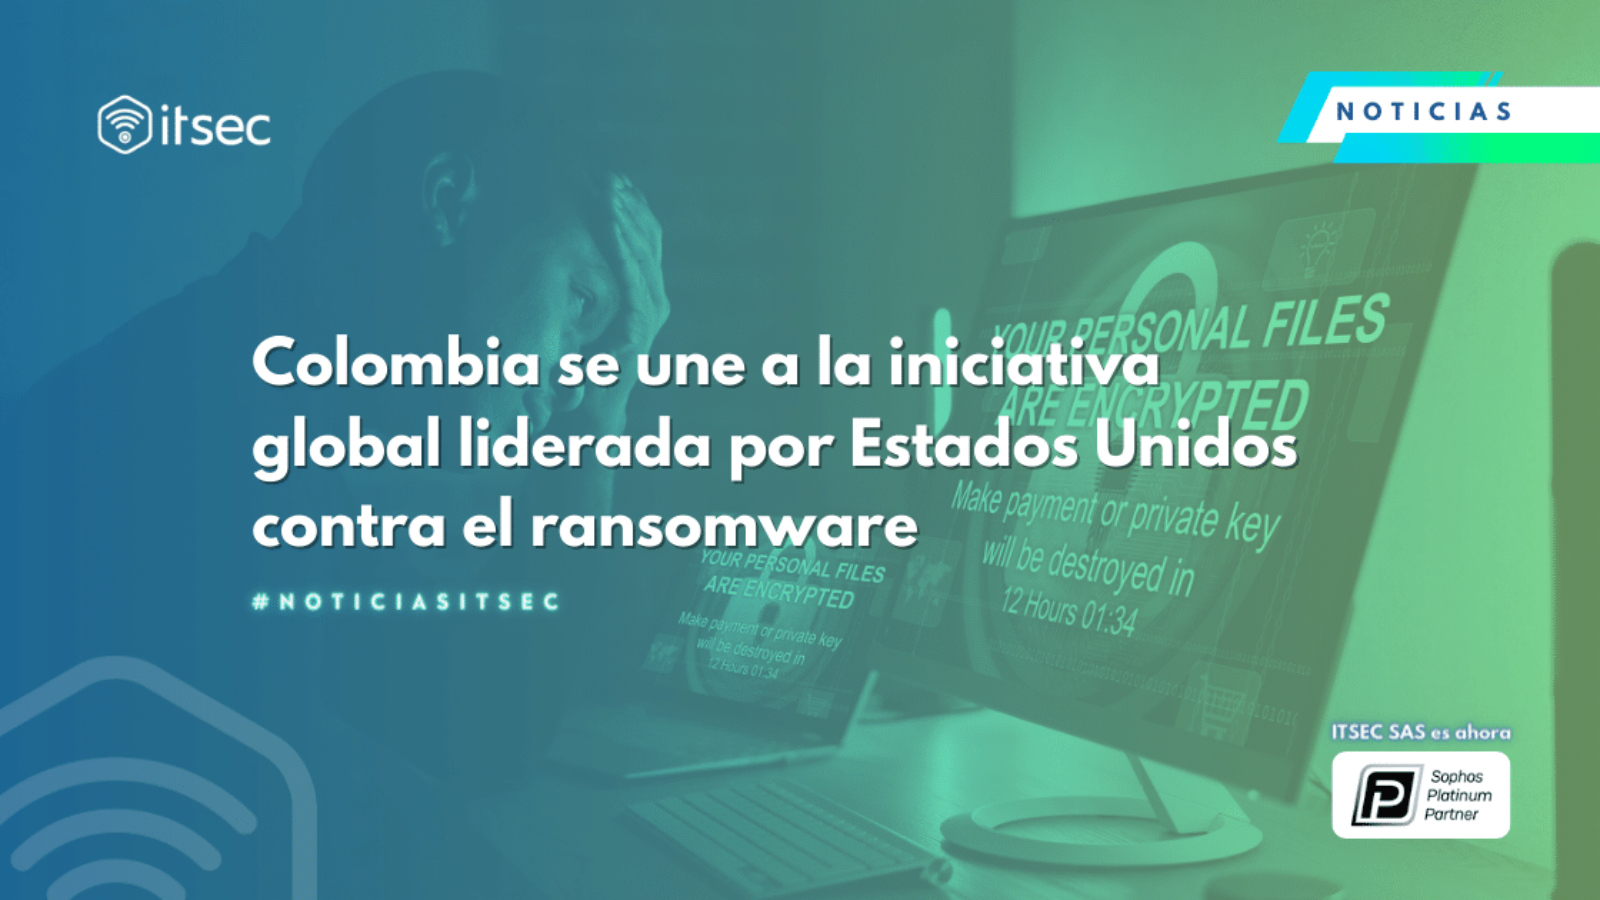 Colombia se une a la iniciativa global liderada por Estados Unidos contra el ransomware